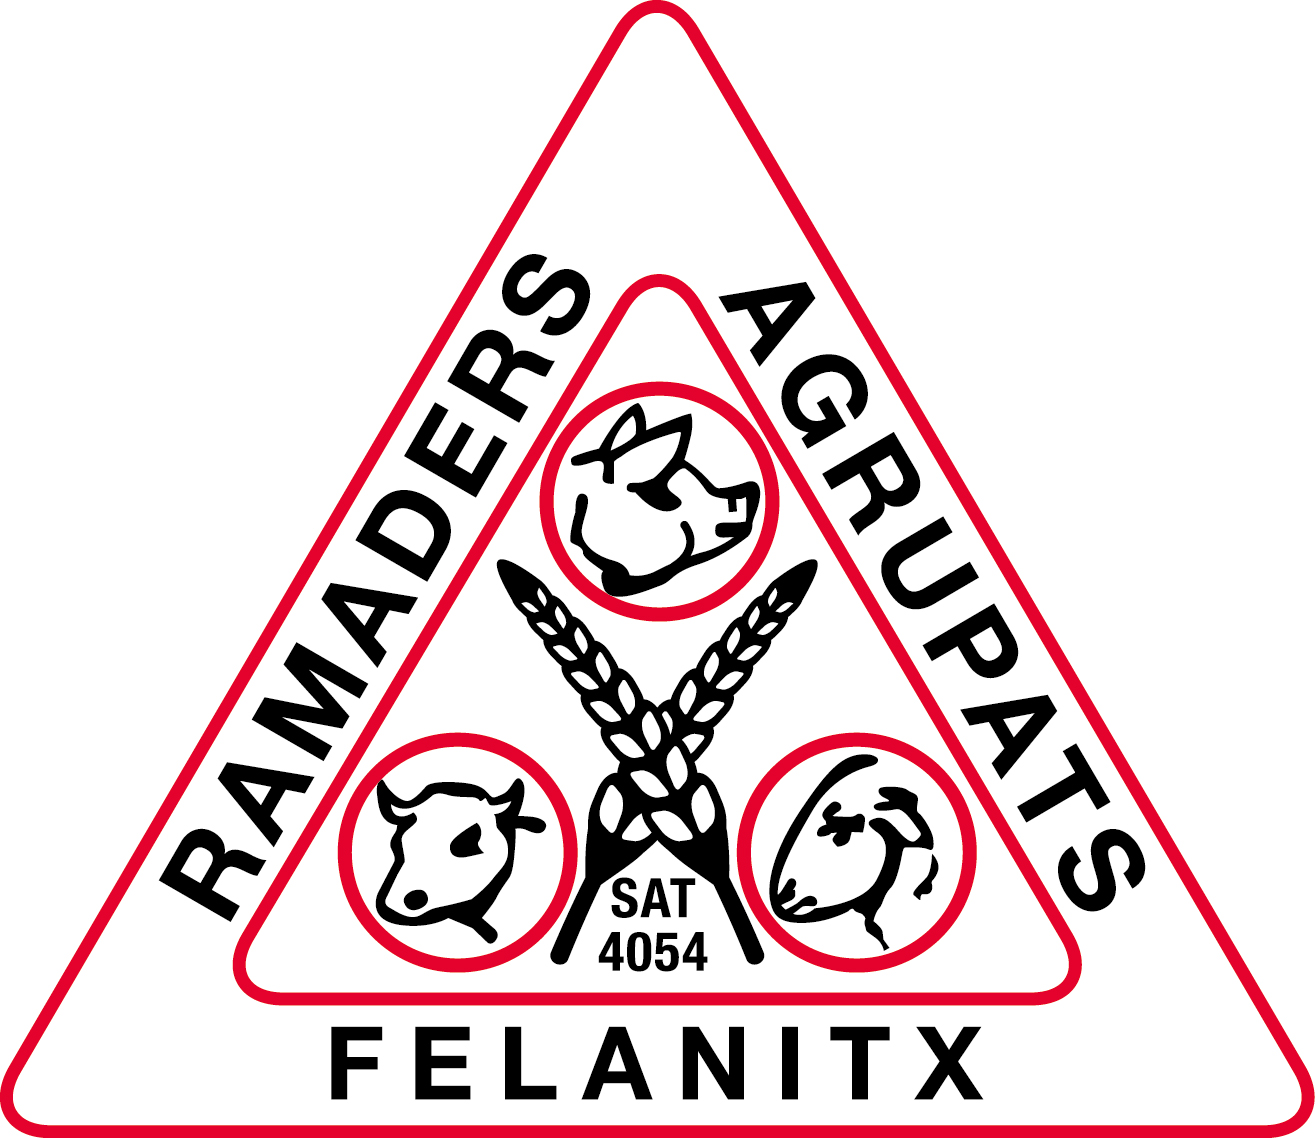 RAMADERS AGRUPATS, S.A.T. - Îles Baléares - Produits agroalimentaires, appellations d'origine et gastronomie des Îles Baléares